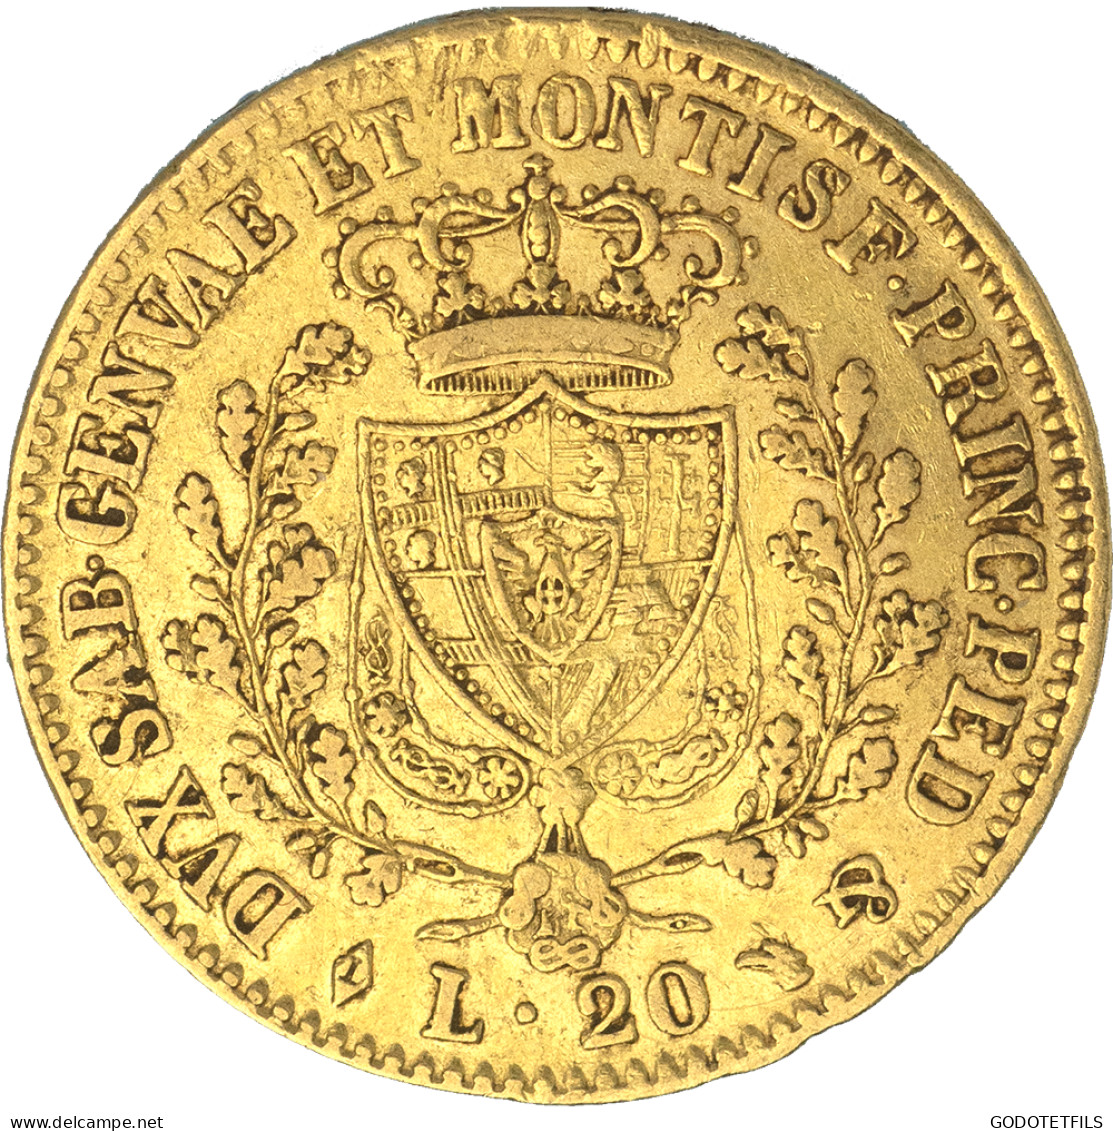 Italie-Royaume De Sardaigne-20 Lire Charles-Félix 1826 Turin - Piémont-Sardaigne-Savoie Italienne